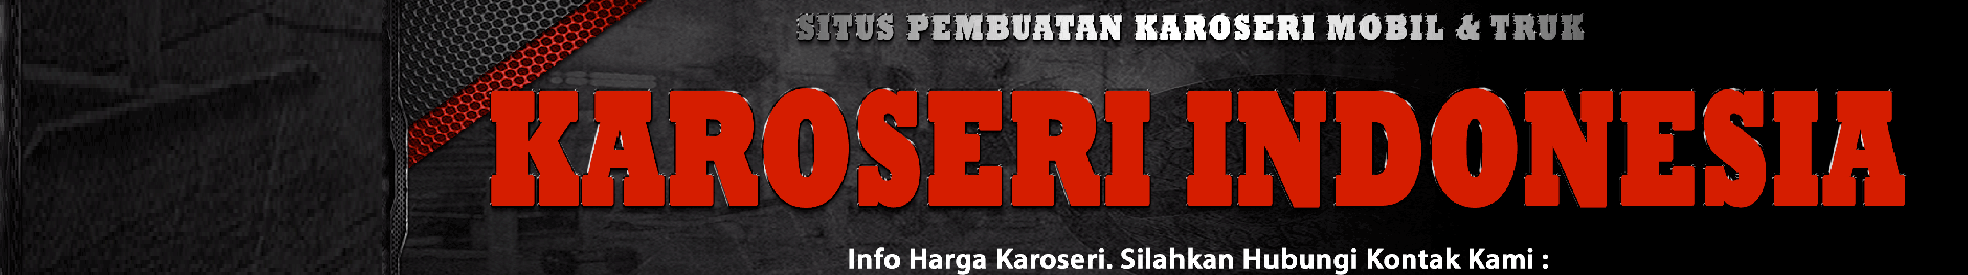 Karoseri Jakarta profil başlığı